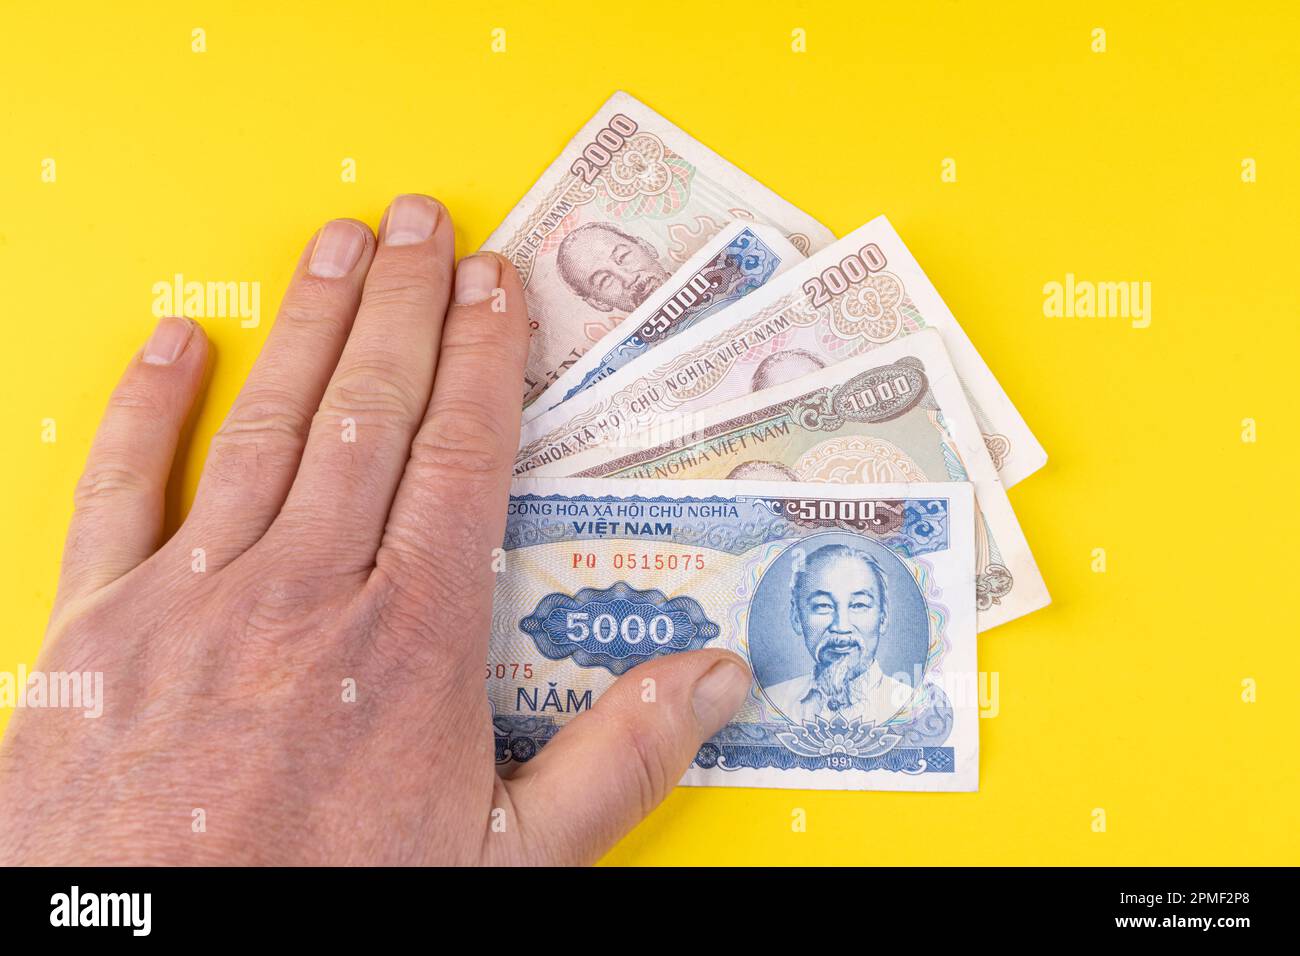 Quelques billets de Dong vietnamiens sur une surface jaune Banque D'Images